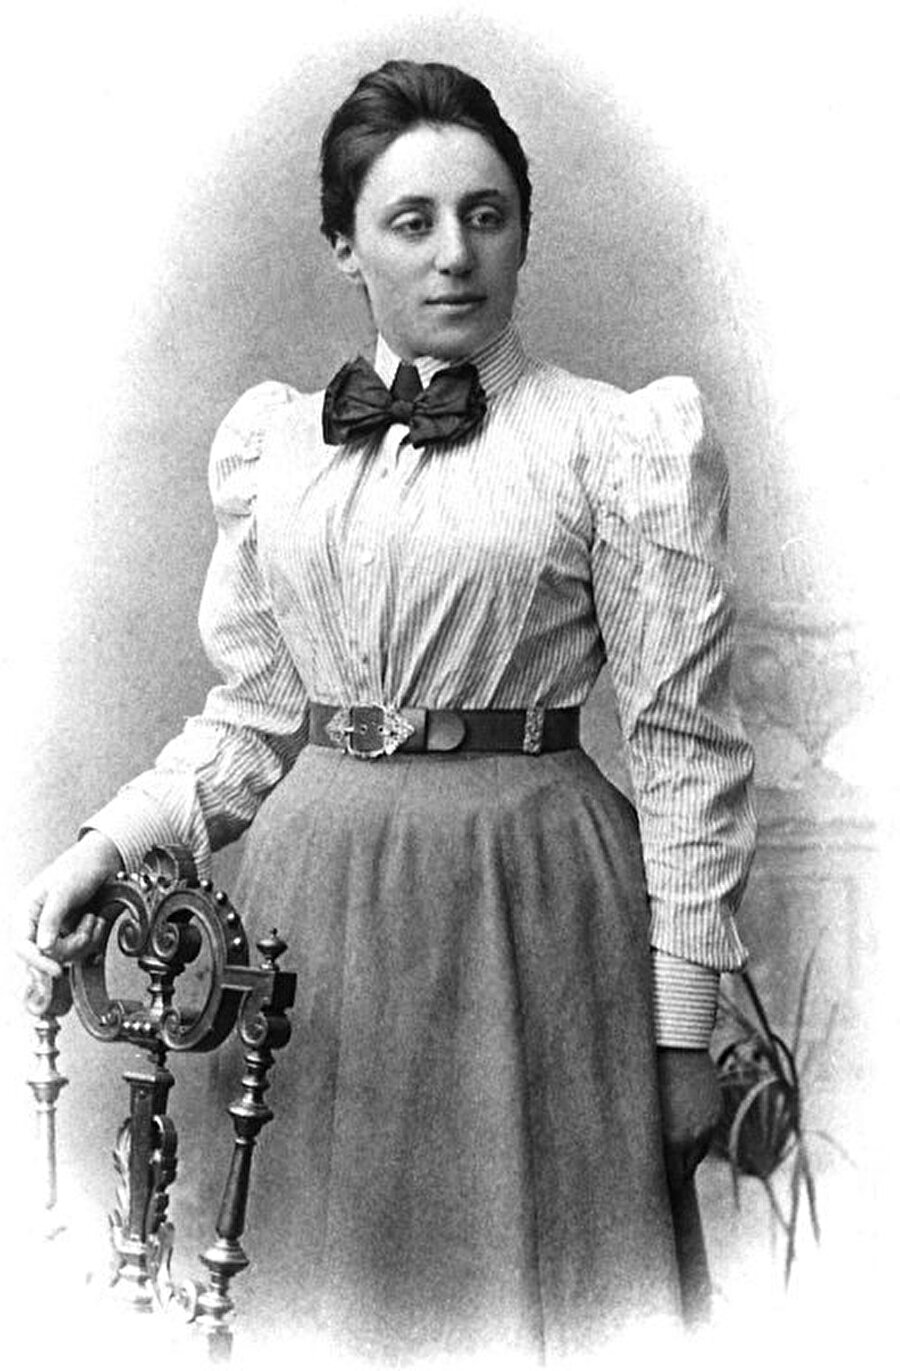 Matematikçi; Emmy Noether
Cebir, halka ve alan teorilerinde devrim yapan bir matematikçidir.
(Yararlanılan kaynaklar: viralnova.com ve wikipedia.org)
